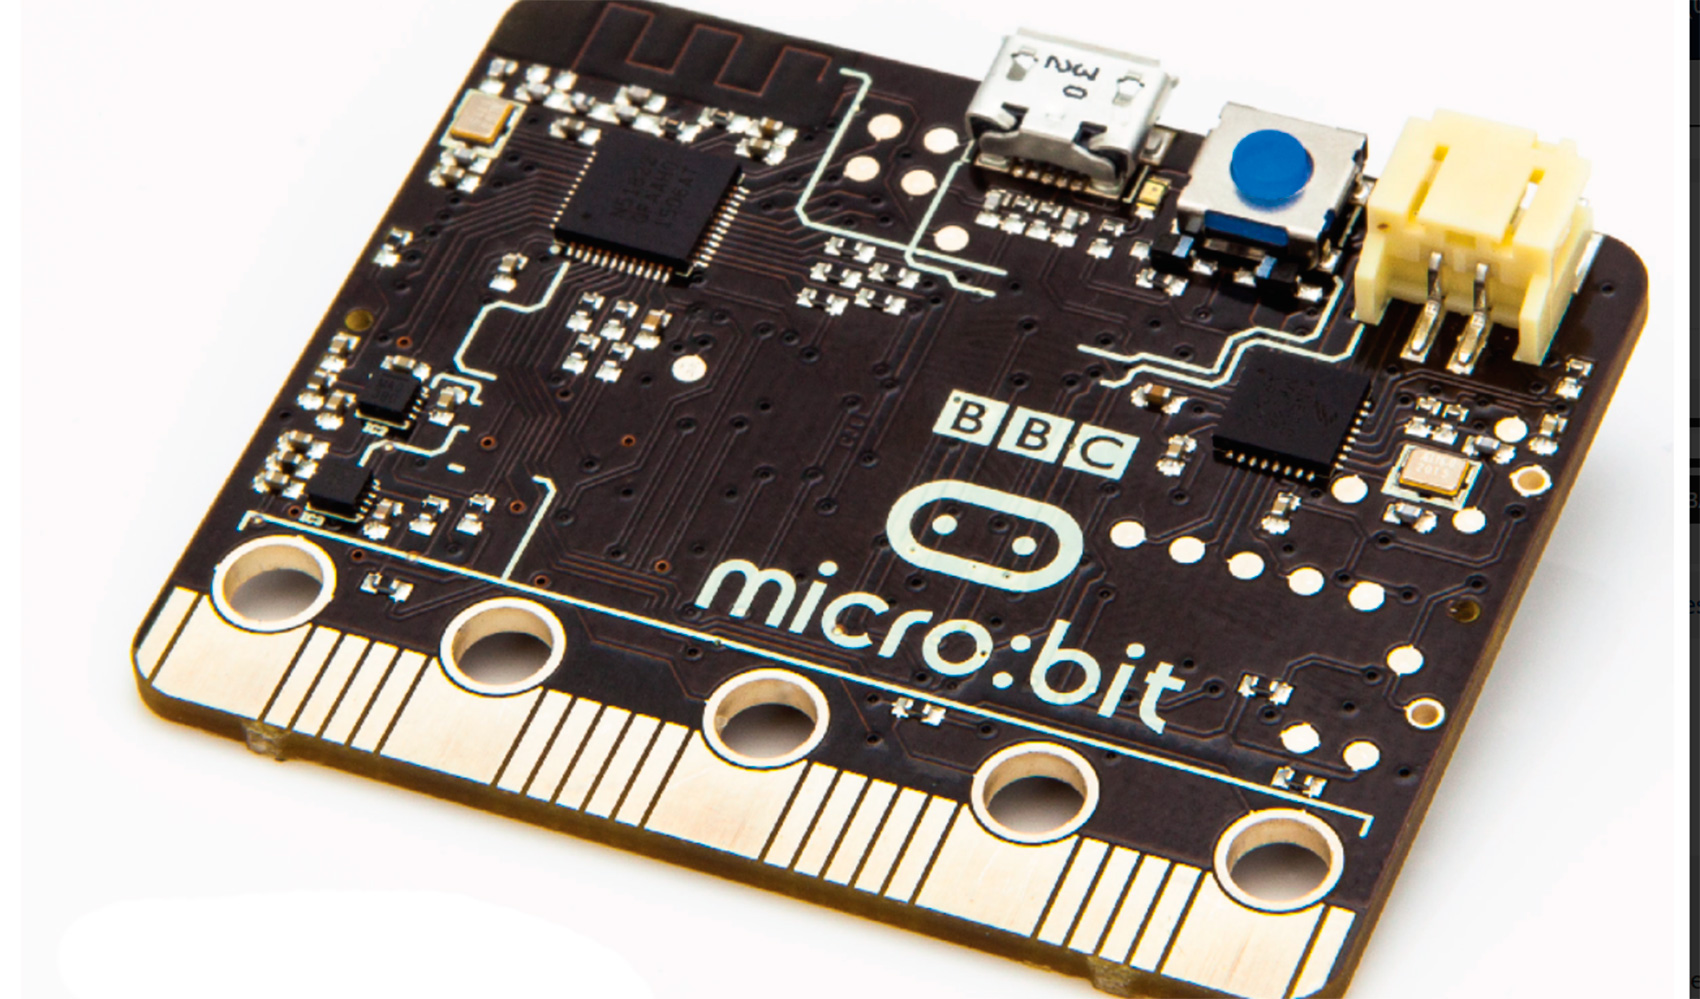 BBC micro:bit se puede programar sin conocimientos previos de informtica, aunque tiene funcionalidades bastante amplias...